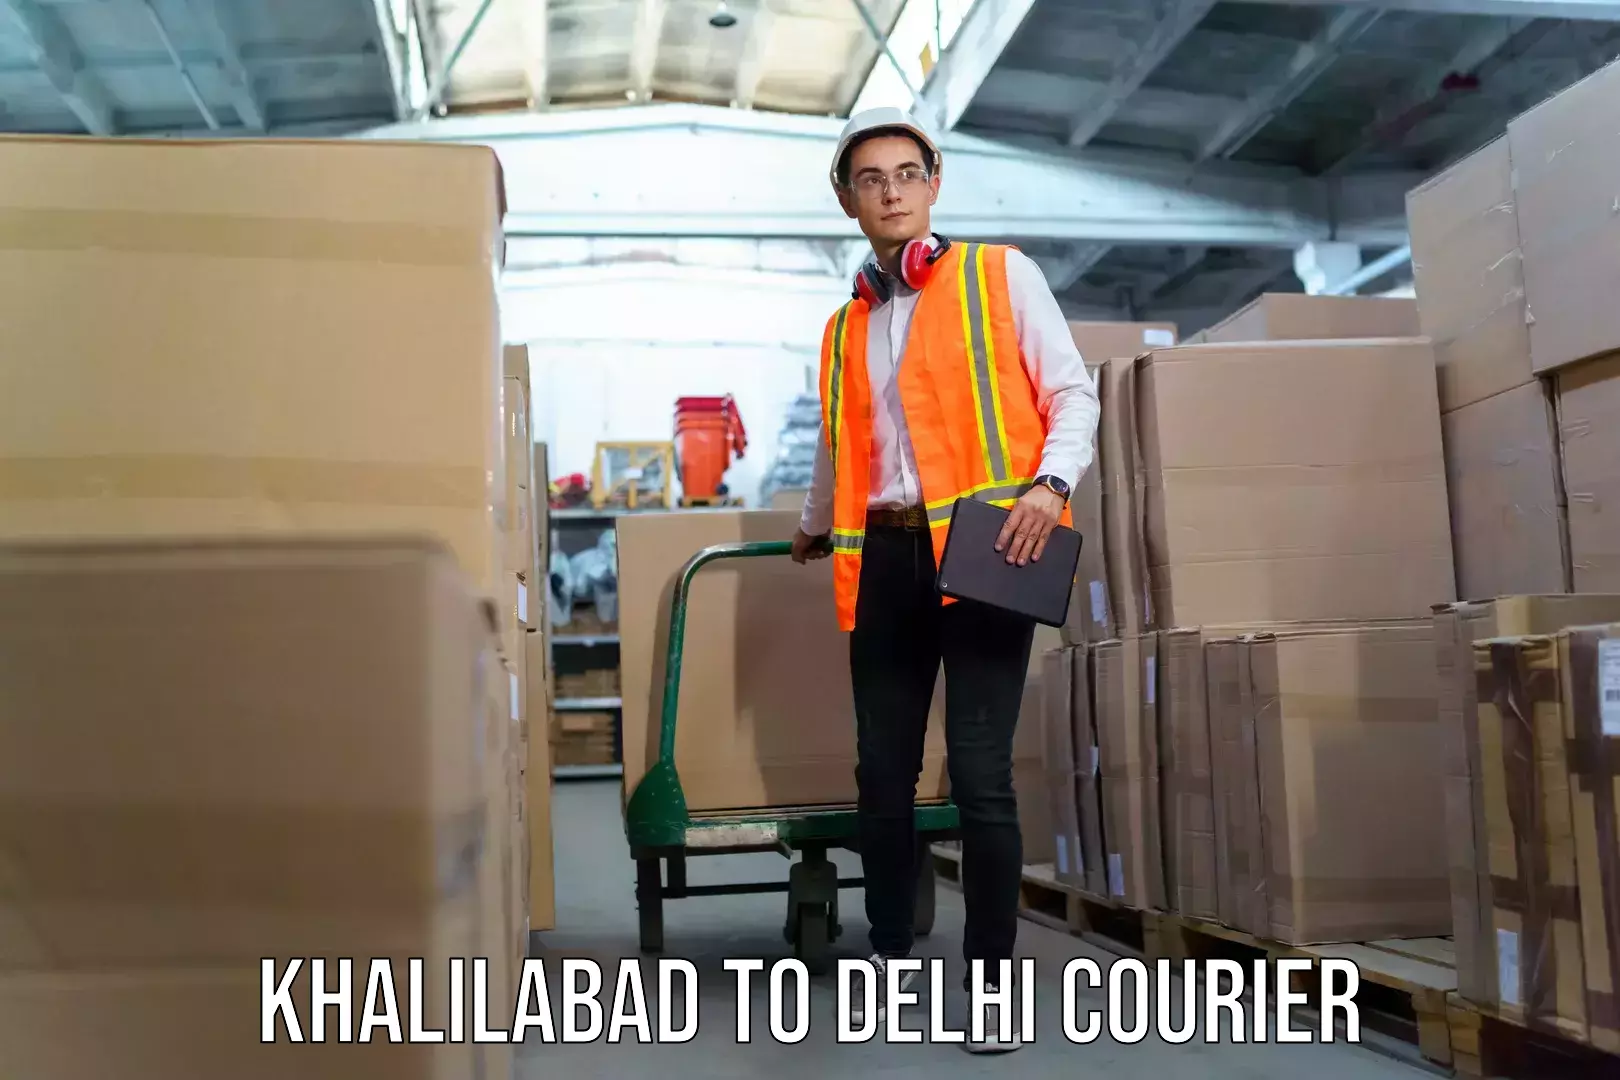 Baggage shipping service Khalilabad to Kalkaji